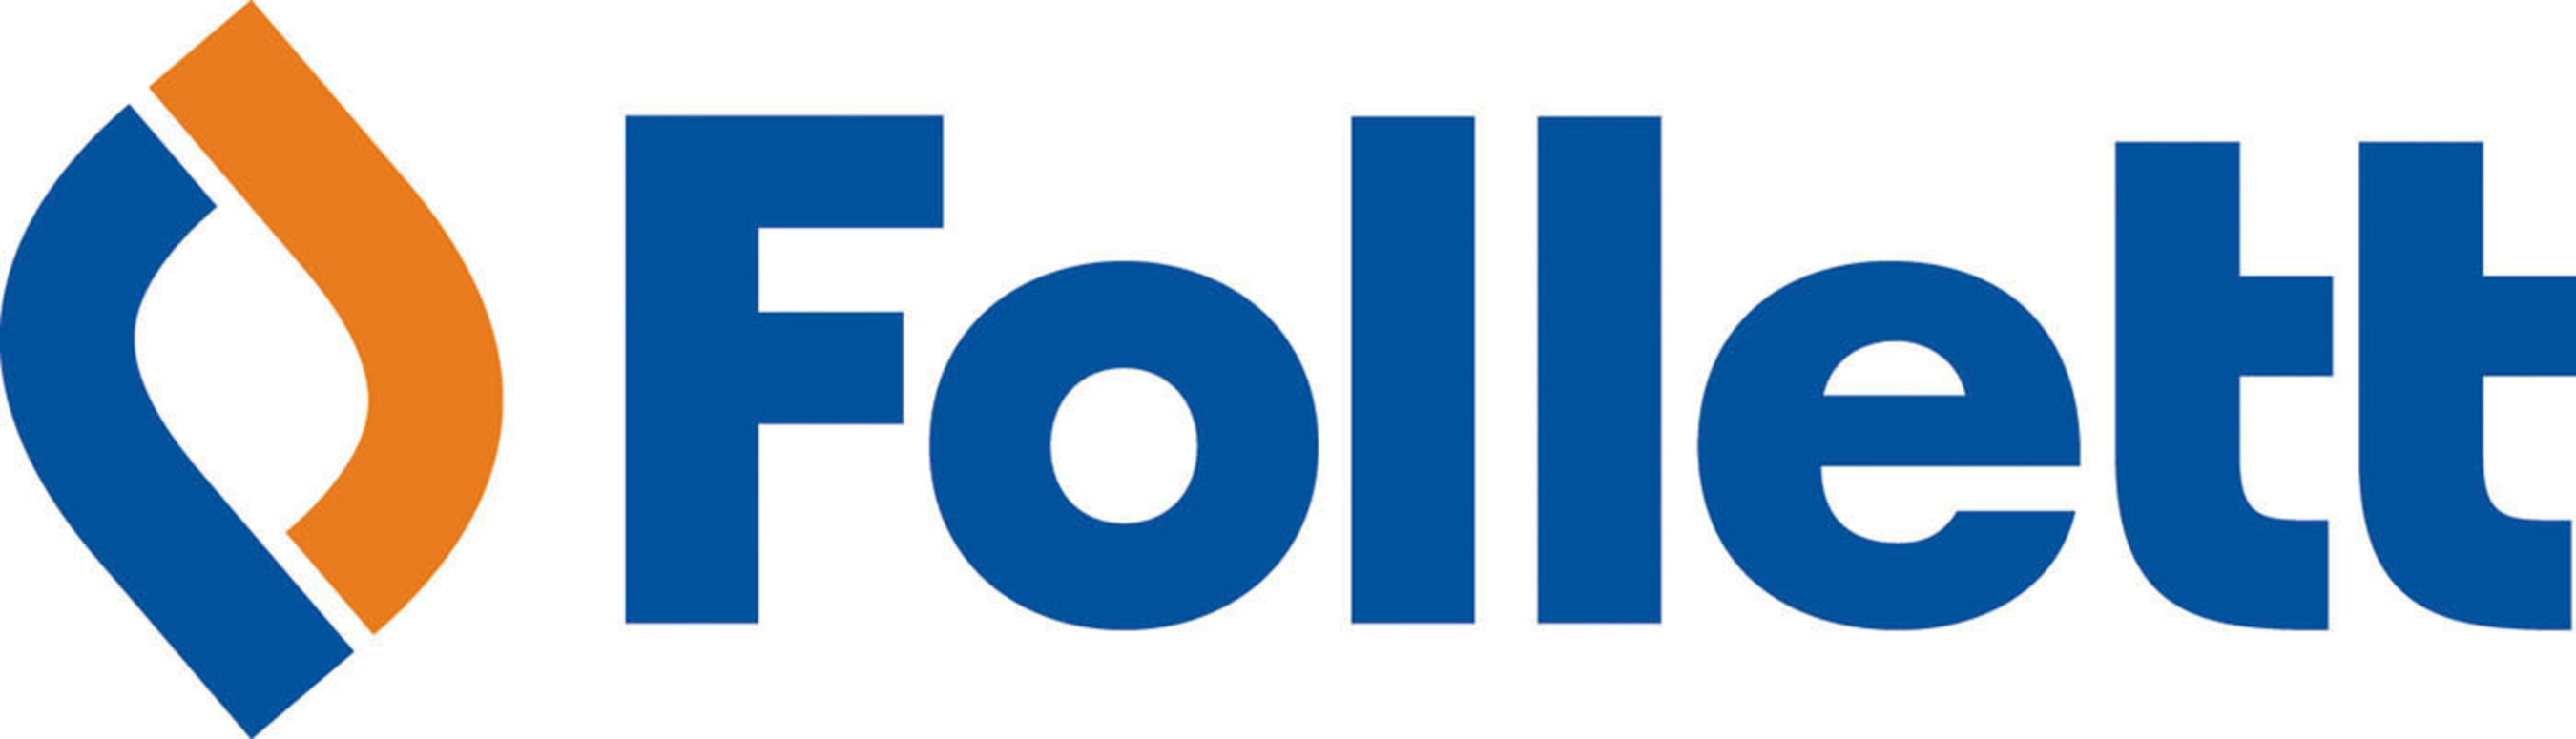 Follett Corporation logo.